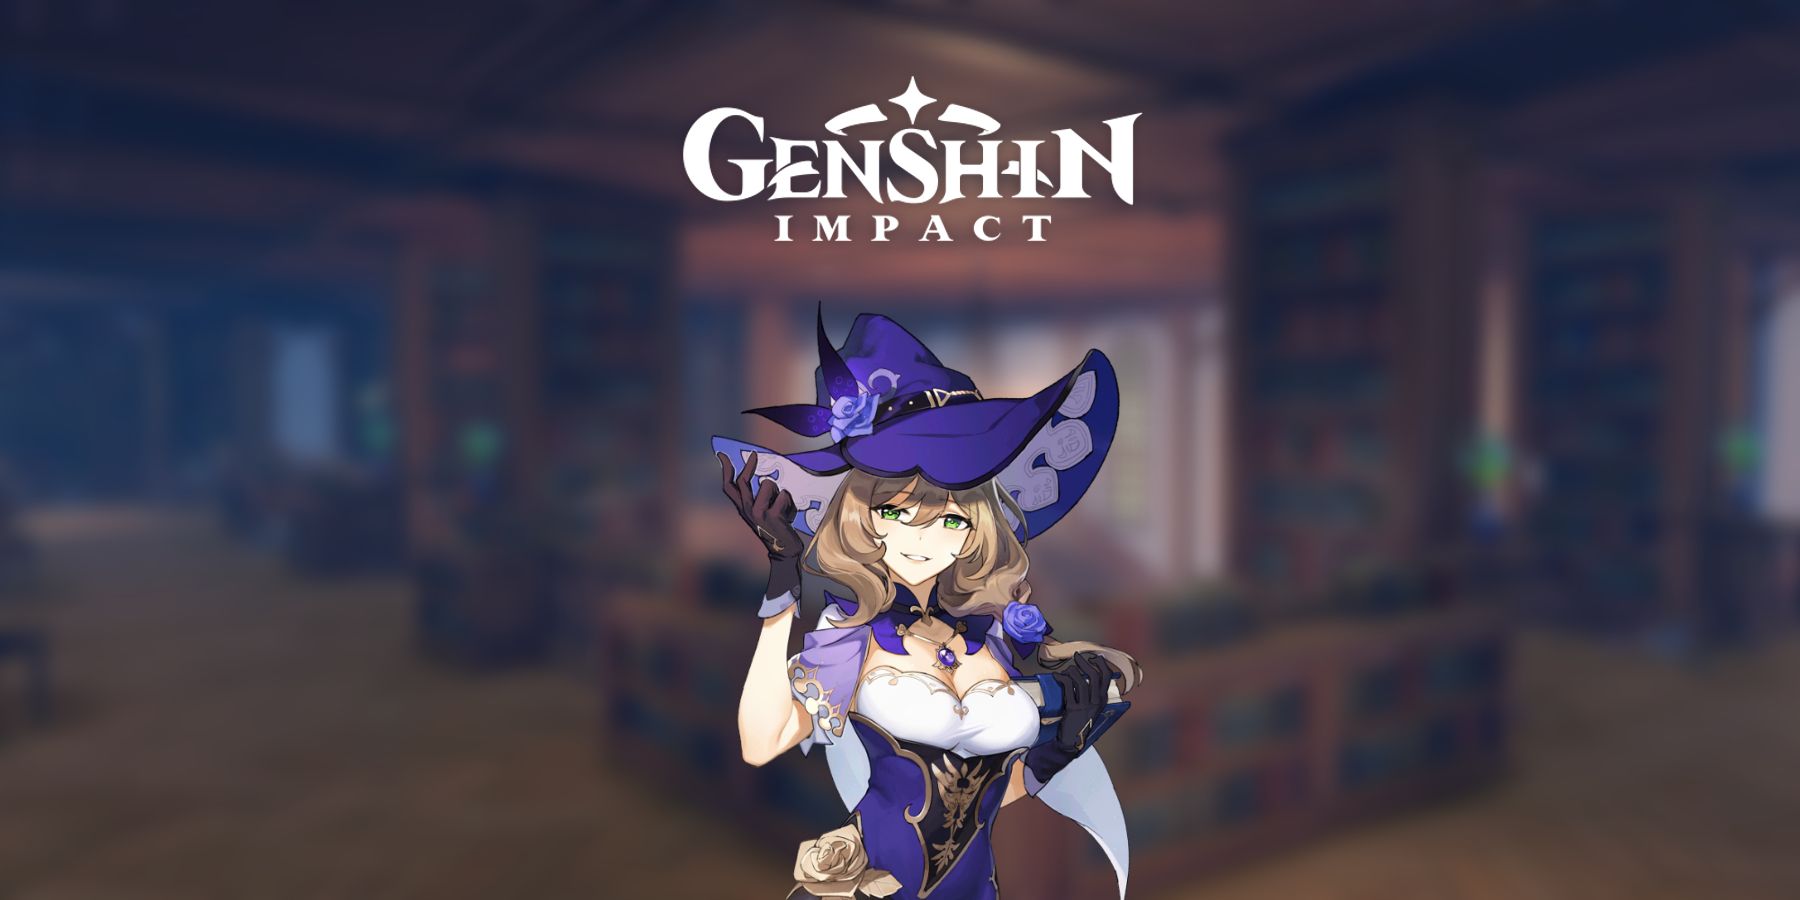 Genshin 충격 : Lisa는 게임 내에서 그녀보다 지식이 훨씬 강합니다.